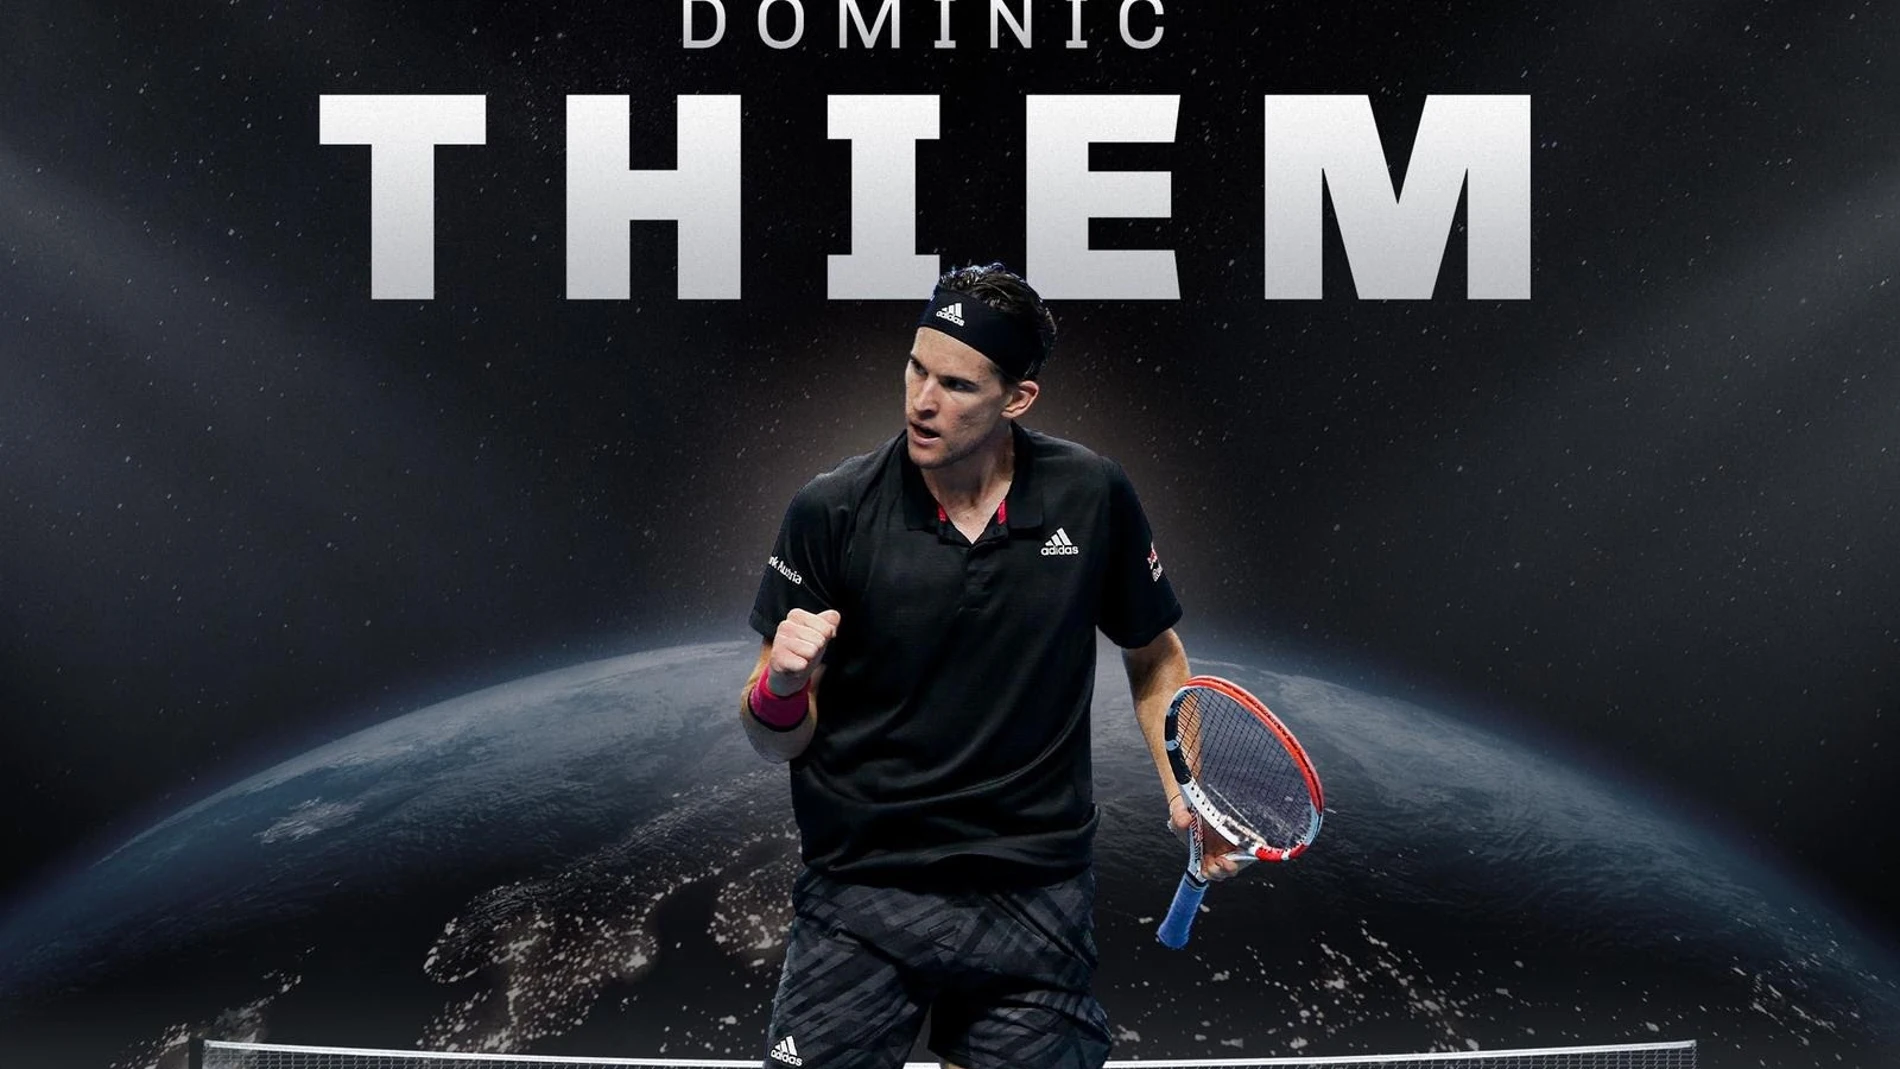 La empresa Kosmos abre una nueva vía de negocio con una agencia de representación de jugadores, con el tenista austriaco Dominic Thiem como primer clienteKOSMOS17/06/2021